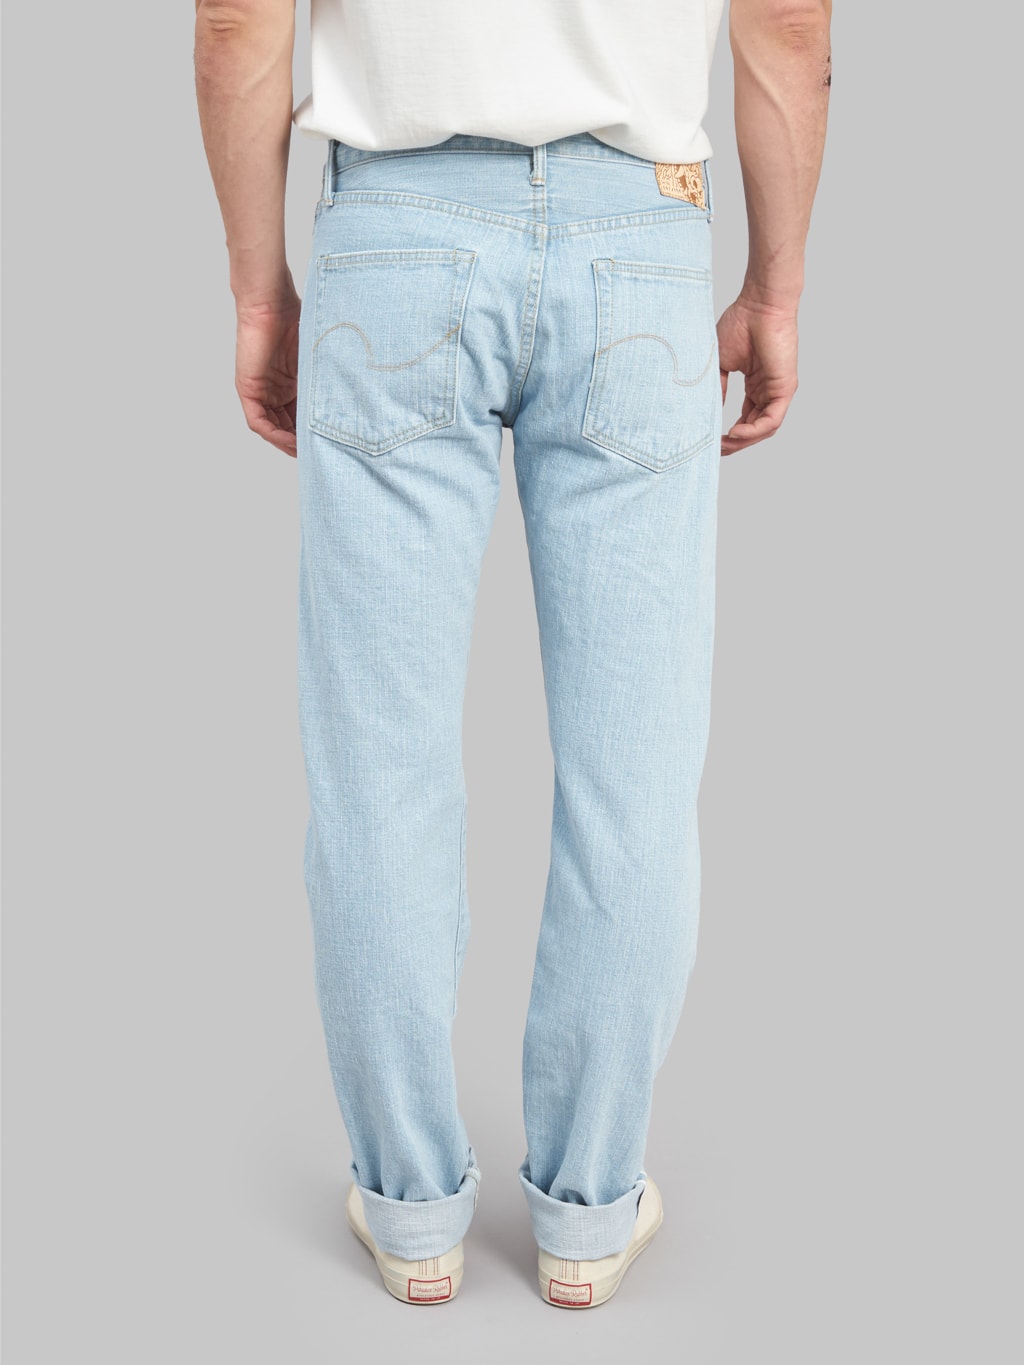 redcast heritage x oni denim kerama blue 15oz selvedge jeans back rise